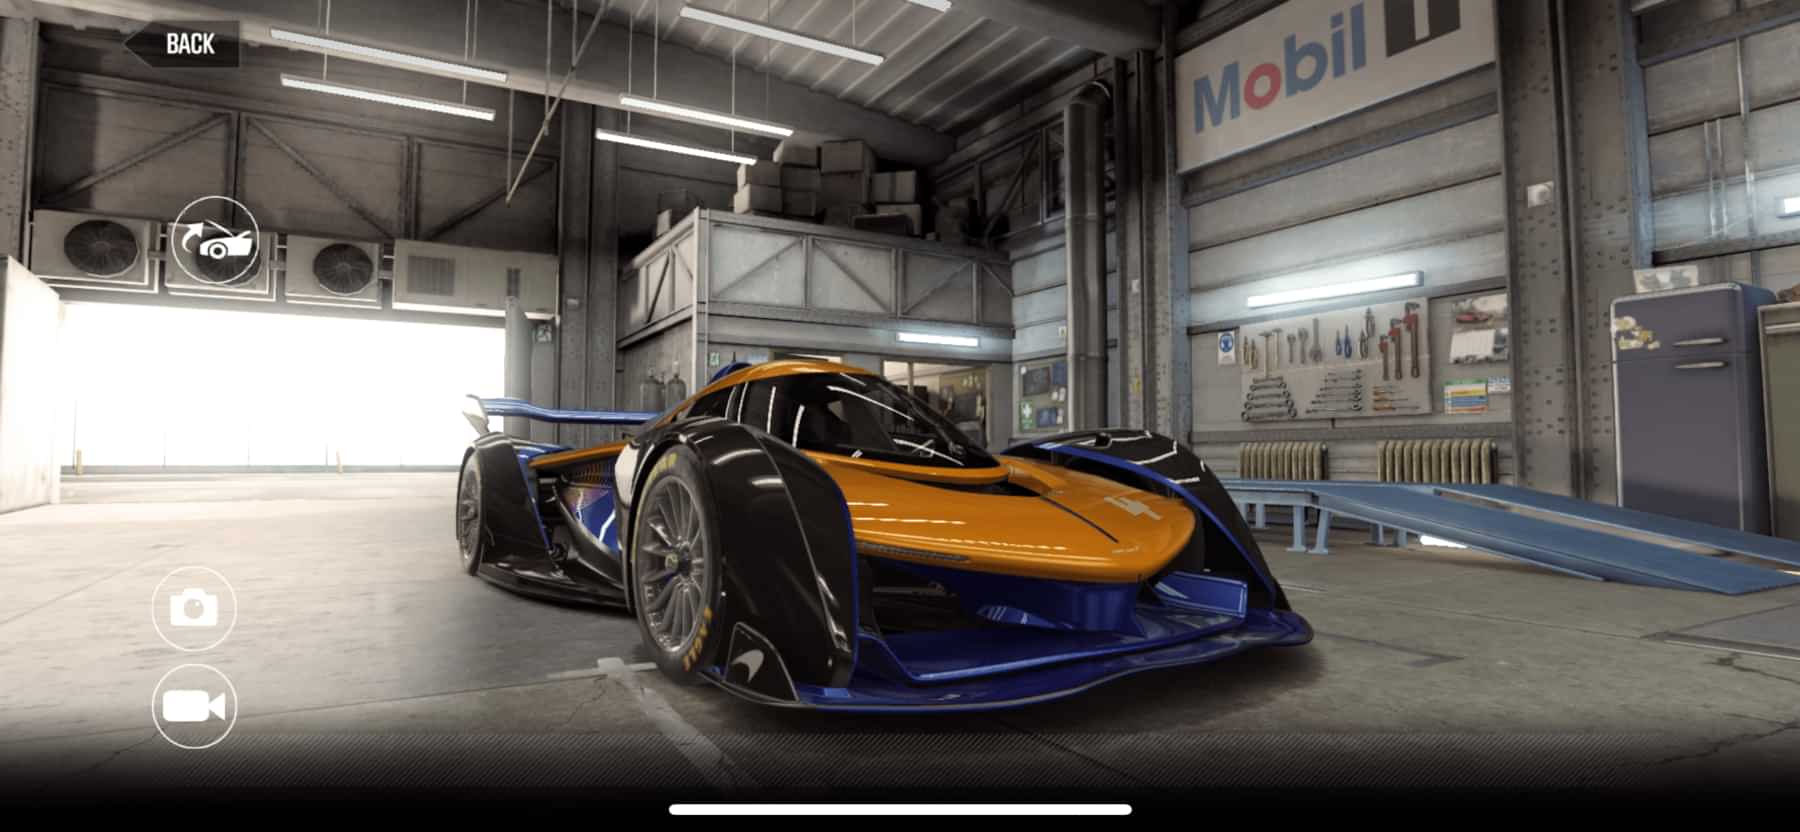 McLaren Solus GT CSR2, best tune and shift pattern